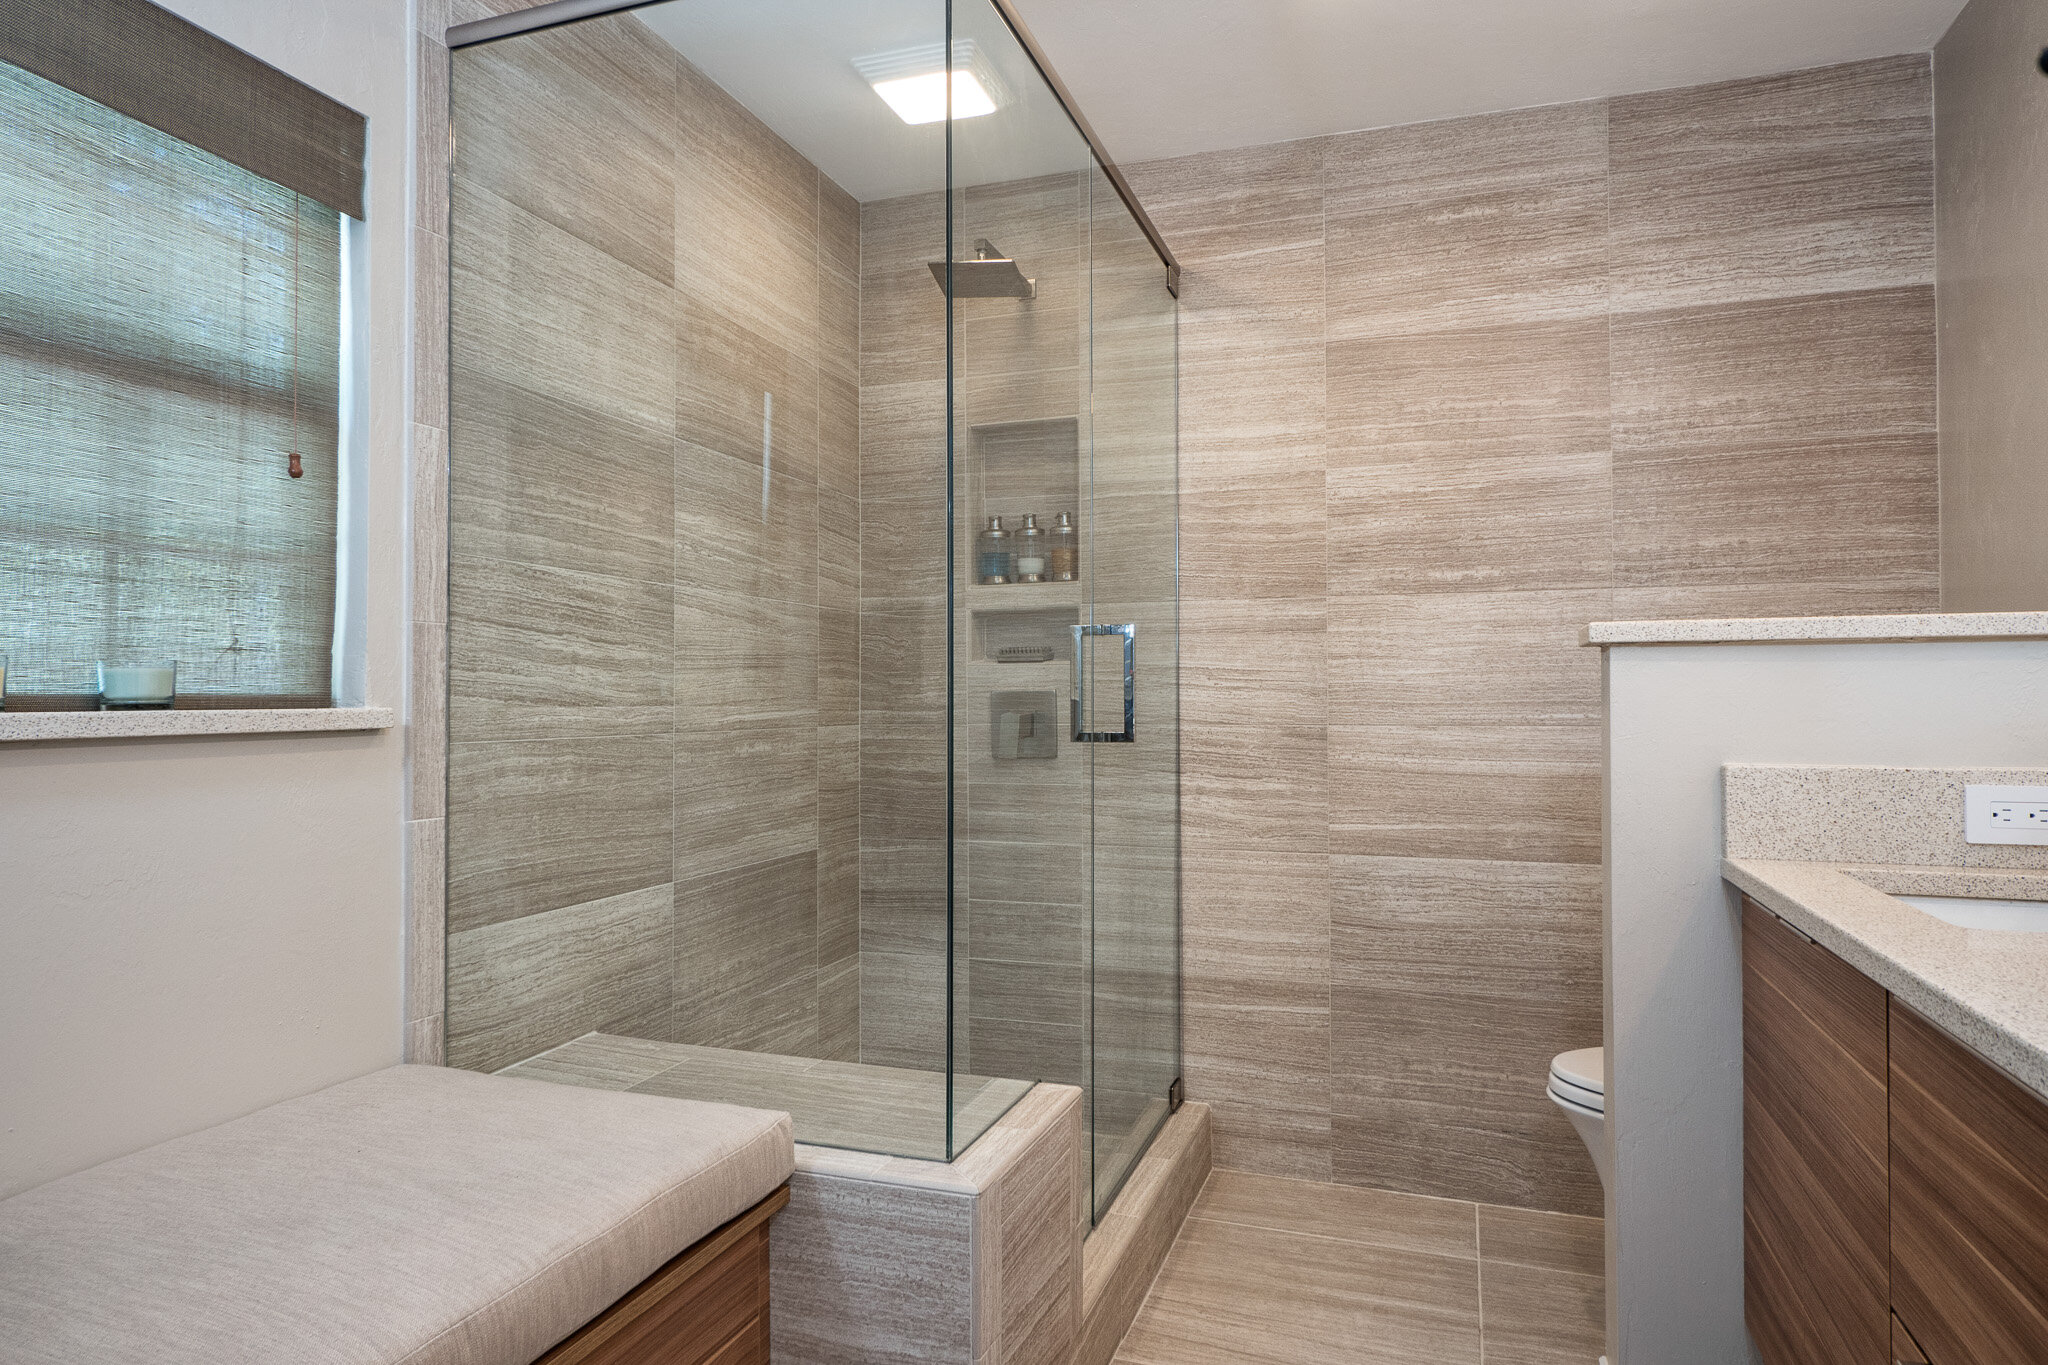 bathroom design with large format tile